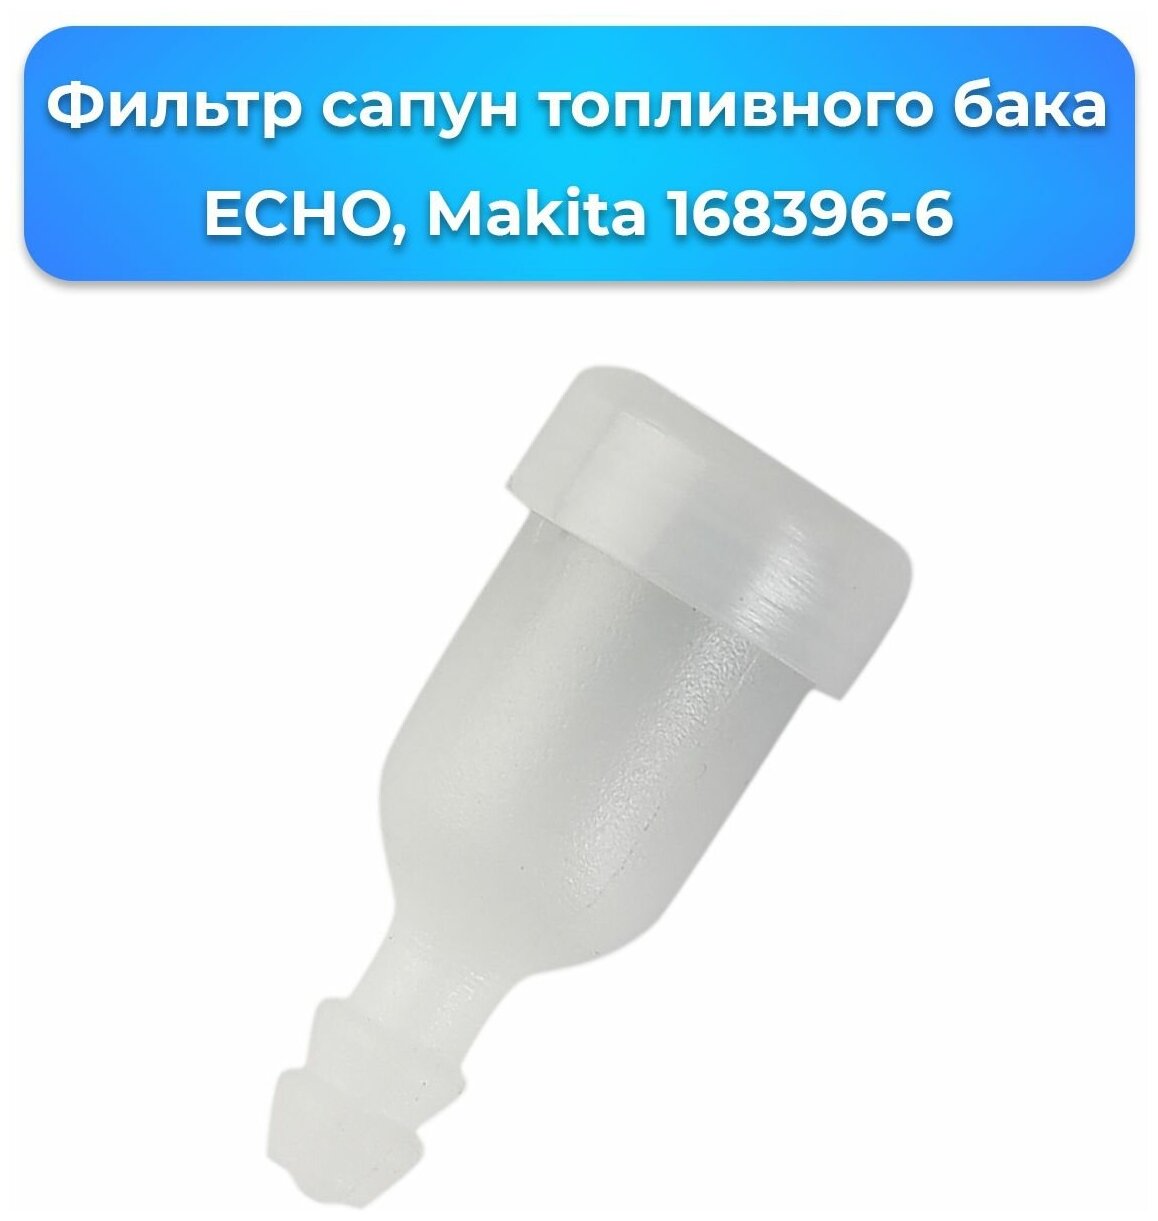 Фильтр сапун топливного бака ECHO, Makita 168396-6 (12-33-00) / запчасти, комплектующие для ремонта